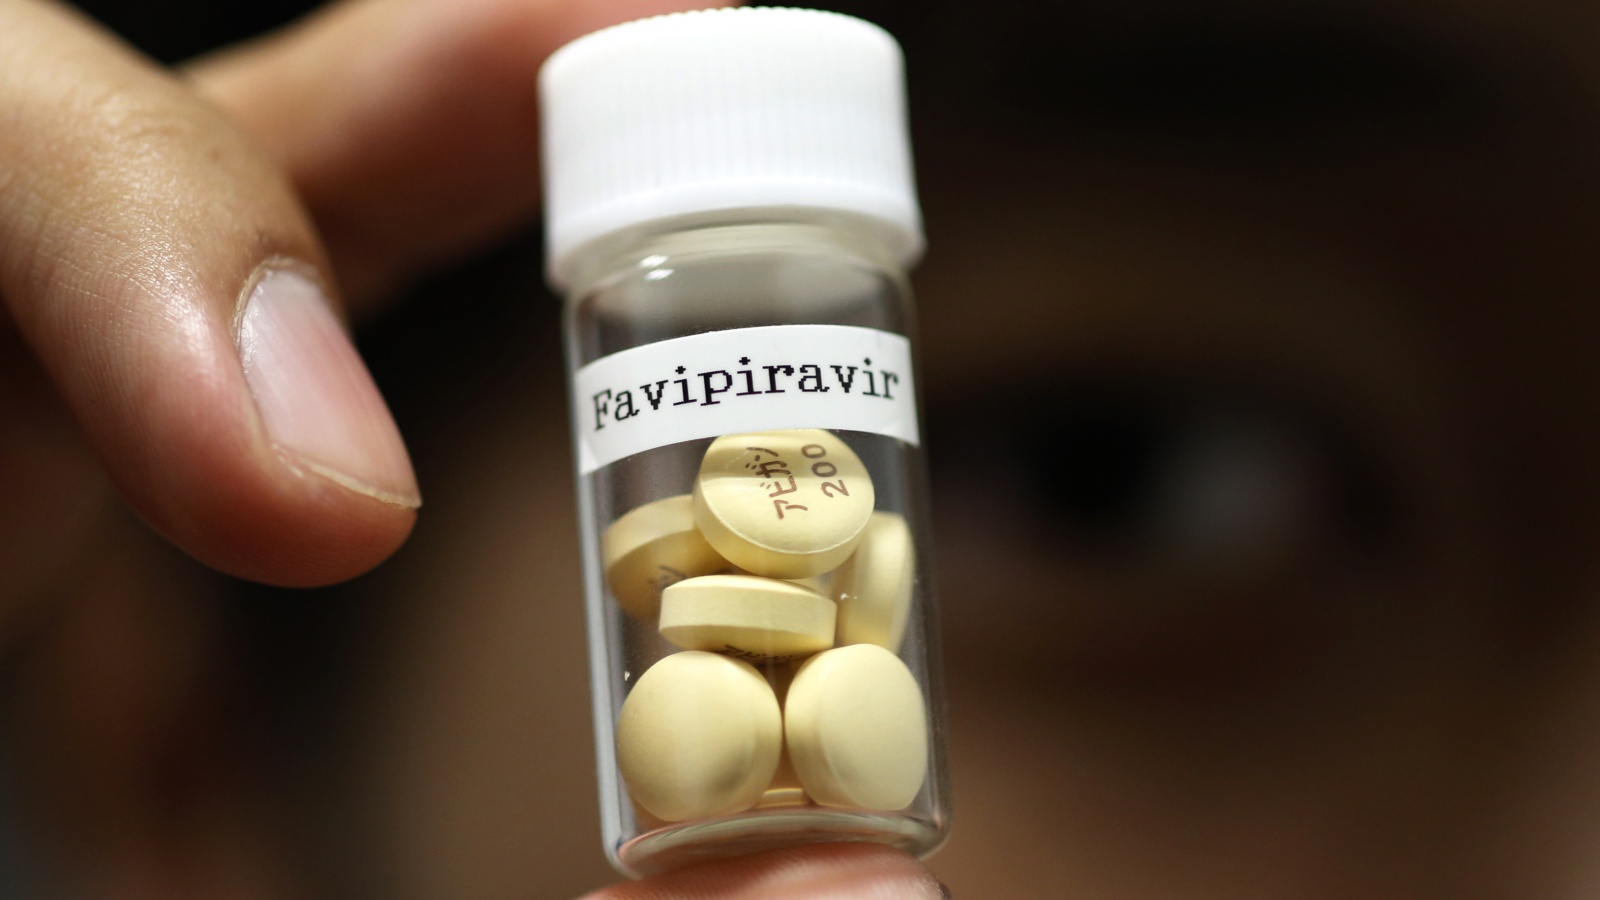 Thuốc favipiravir của Nhật Bản được Trung Quốc phát hiện có hiệu quả trong điều trị Covid-19 (ảnh: Myseldon)